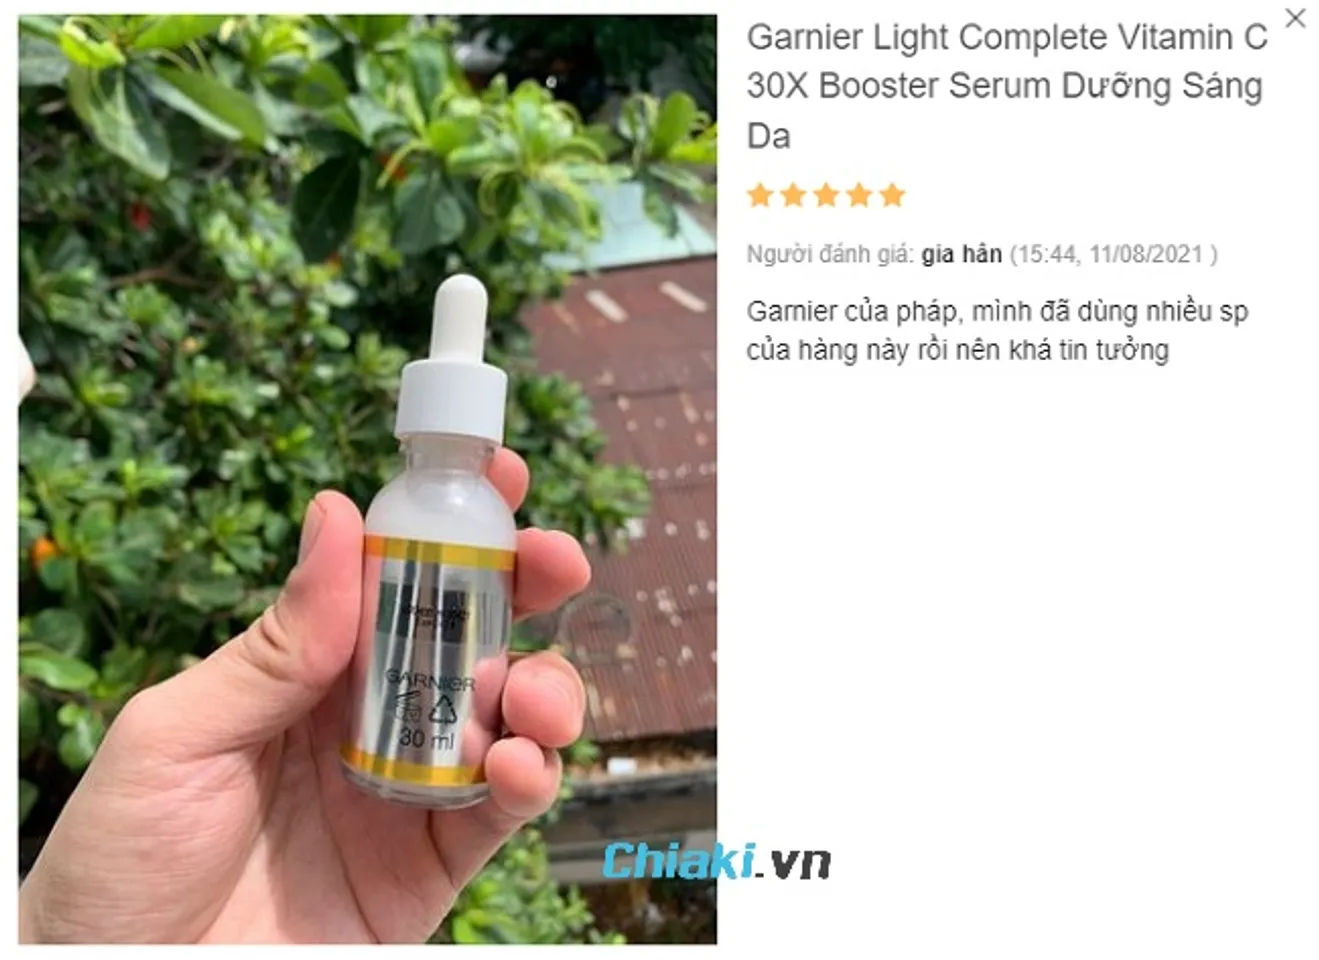 Garnier Light Complete Vitamin C 30X Booster Serum